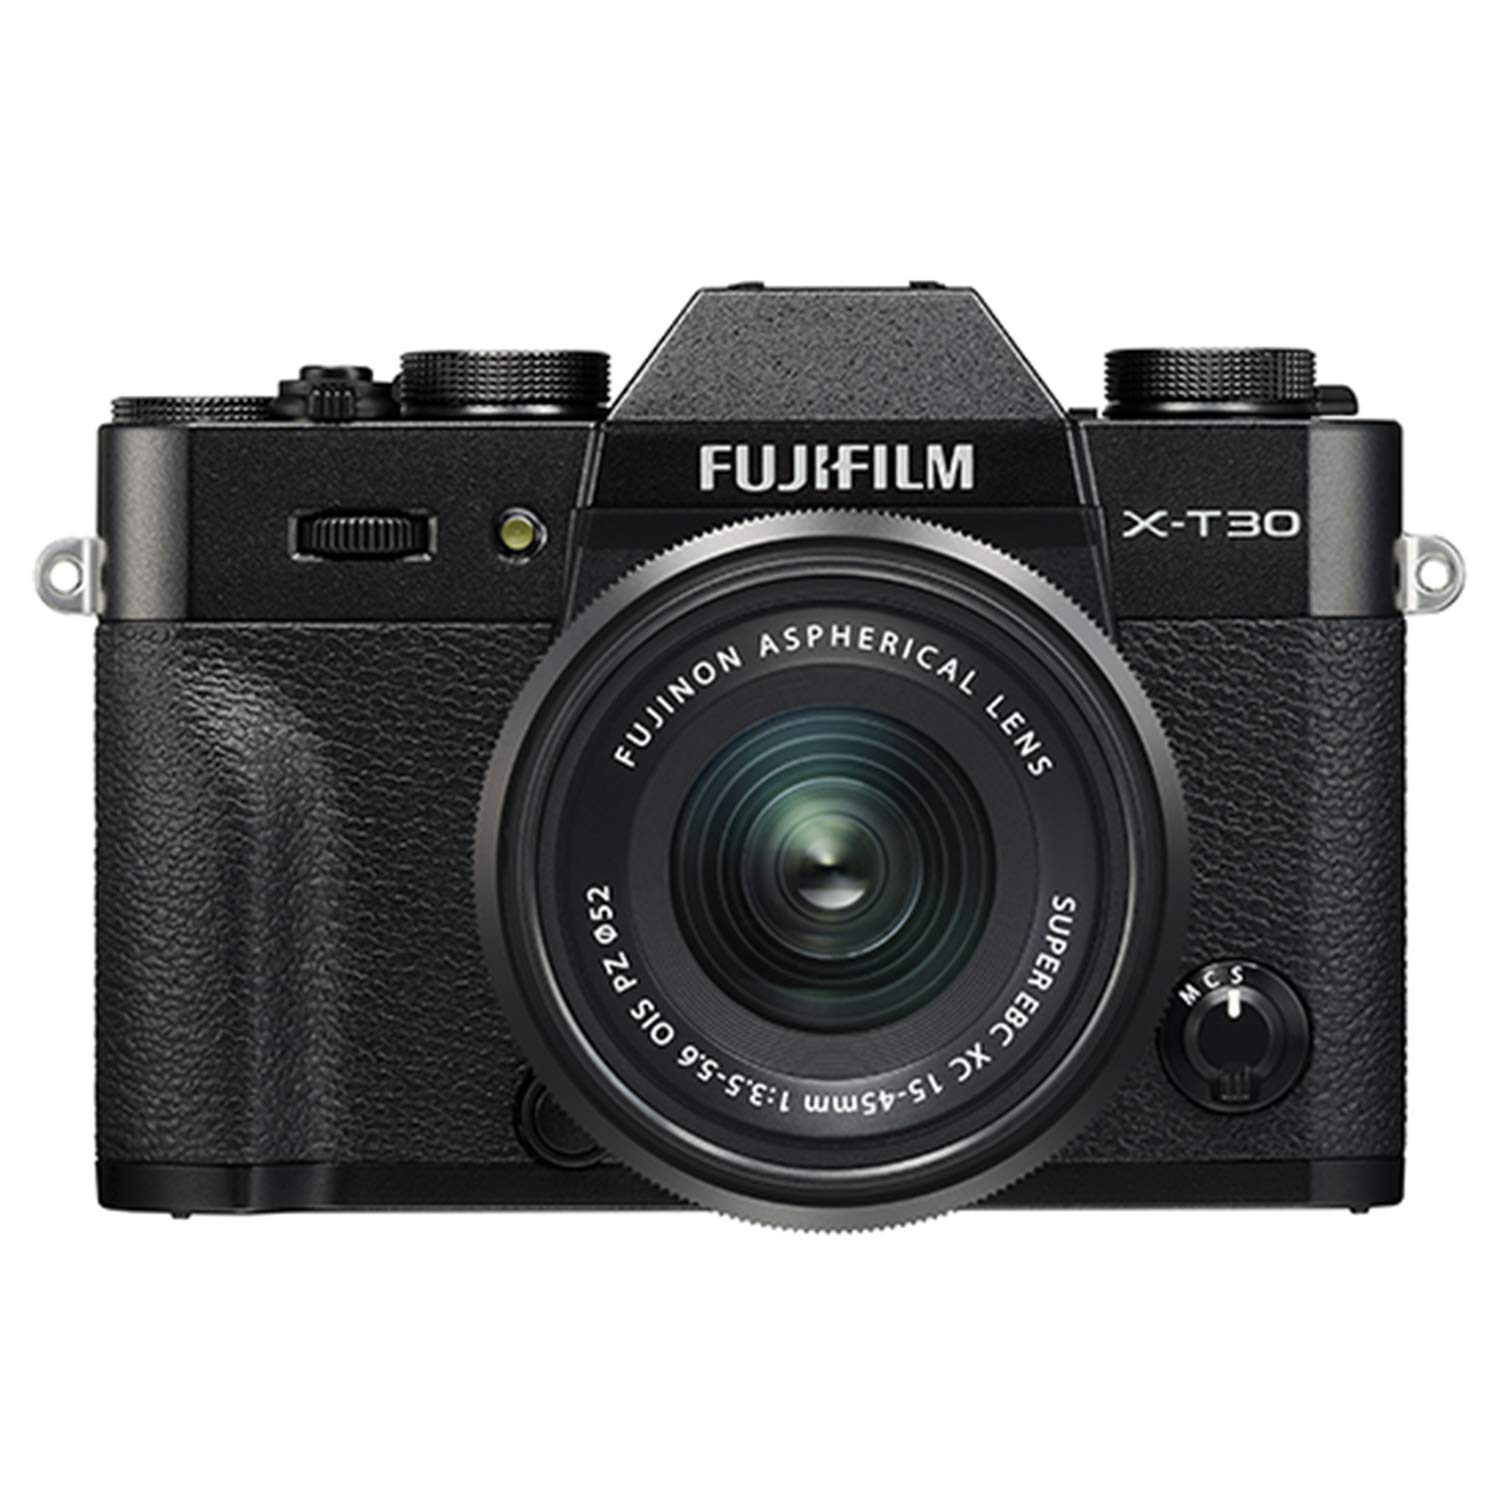 Fujifilm Aparat bezlusterkowy  X-T30 z obiektywem XC 15-45mm f/3.5-5.6 OIS PZ - czarny